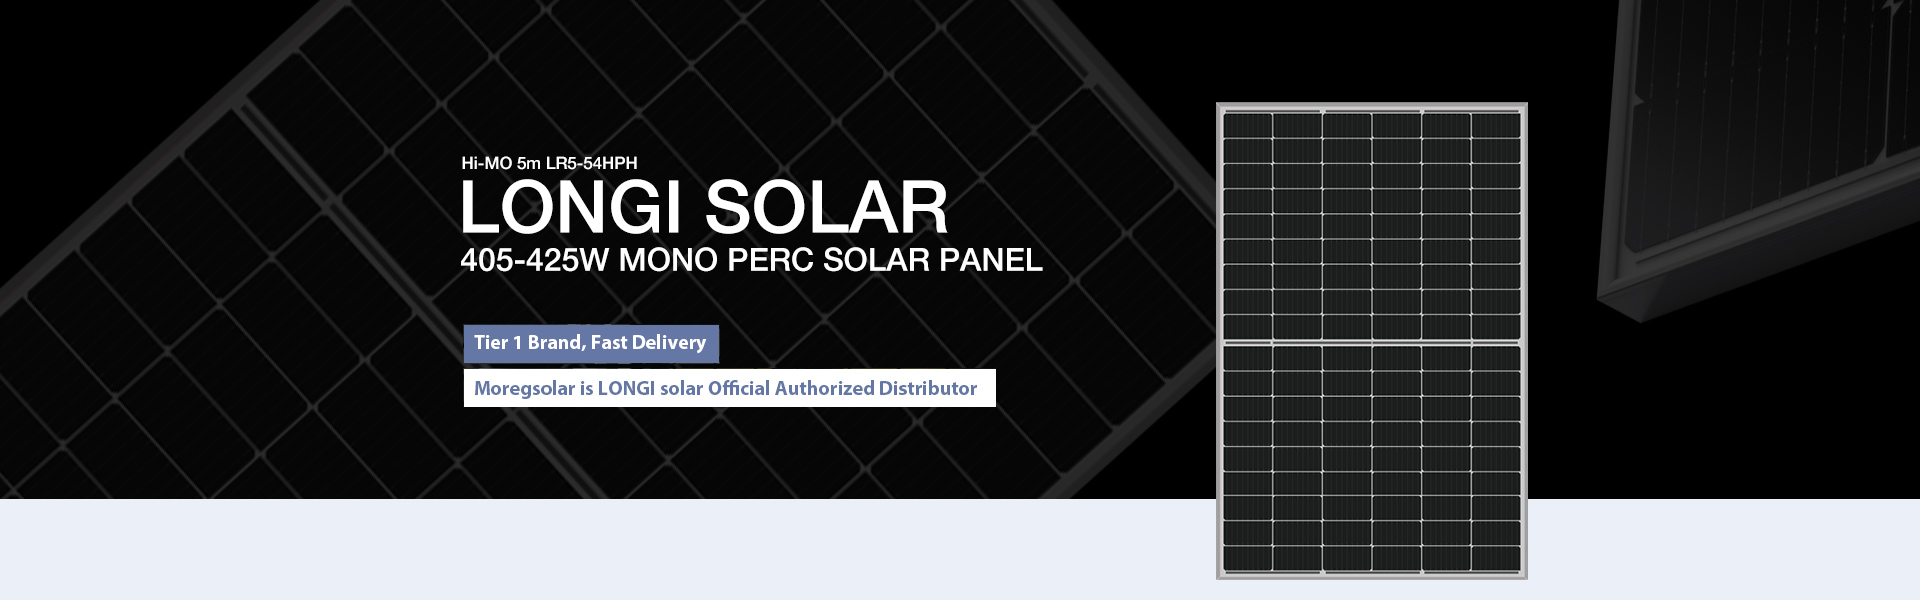 Longi solar panel 405w 410w 420w 425w price